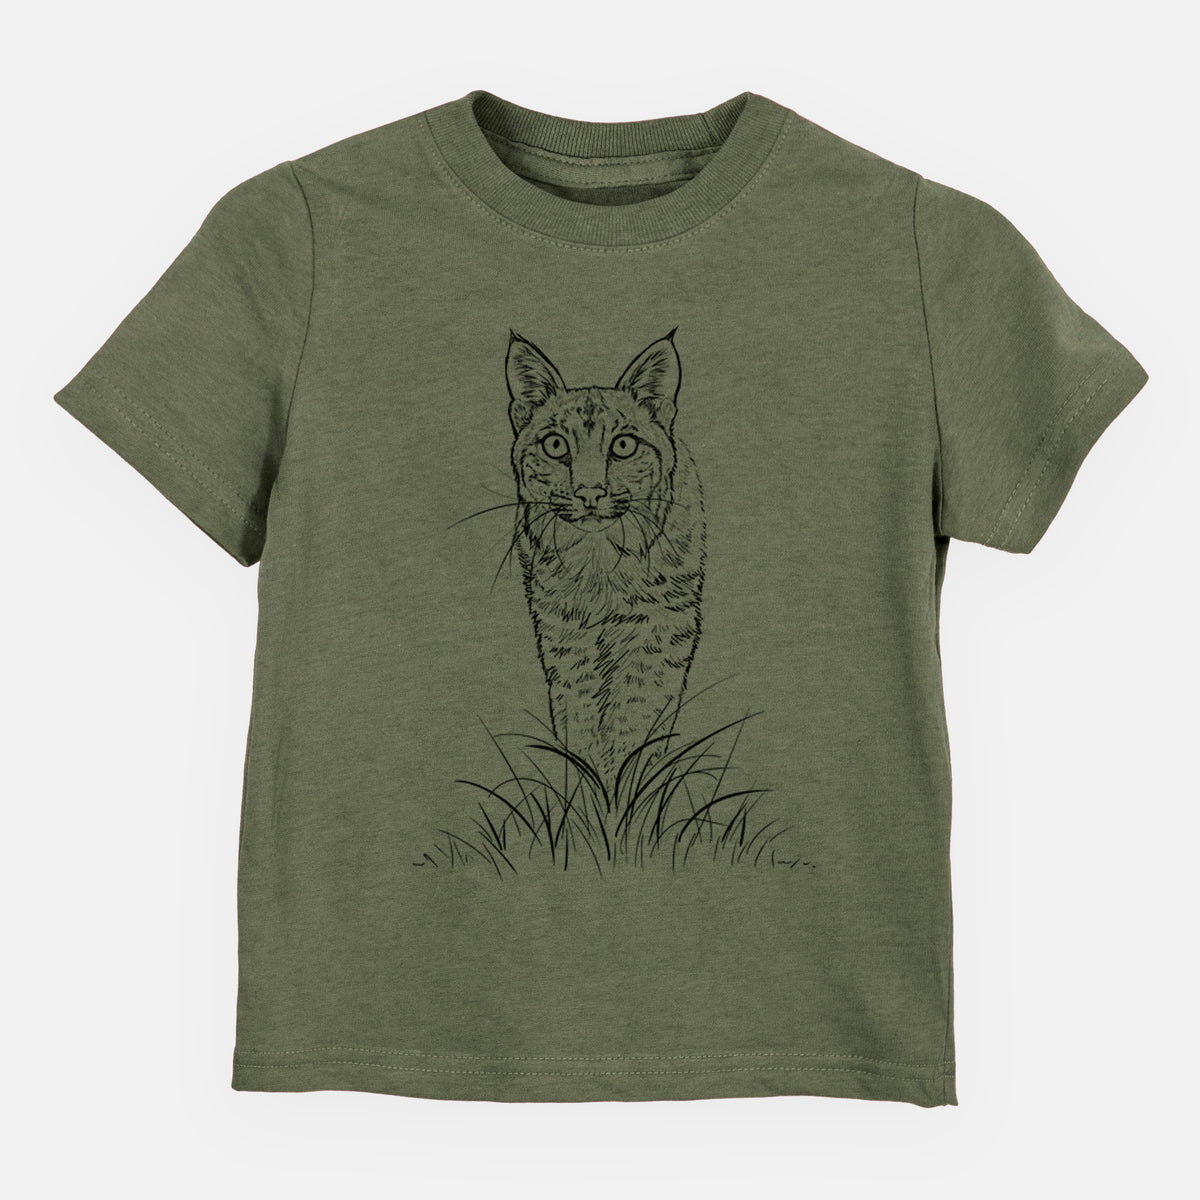 Bobcat - Lynx rufus - Kids Shirt